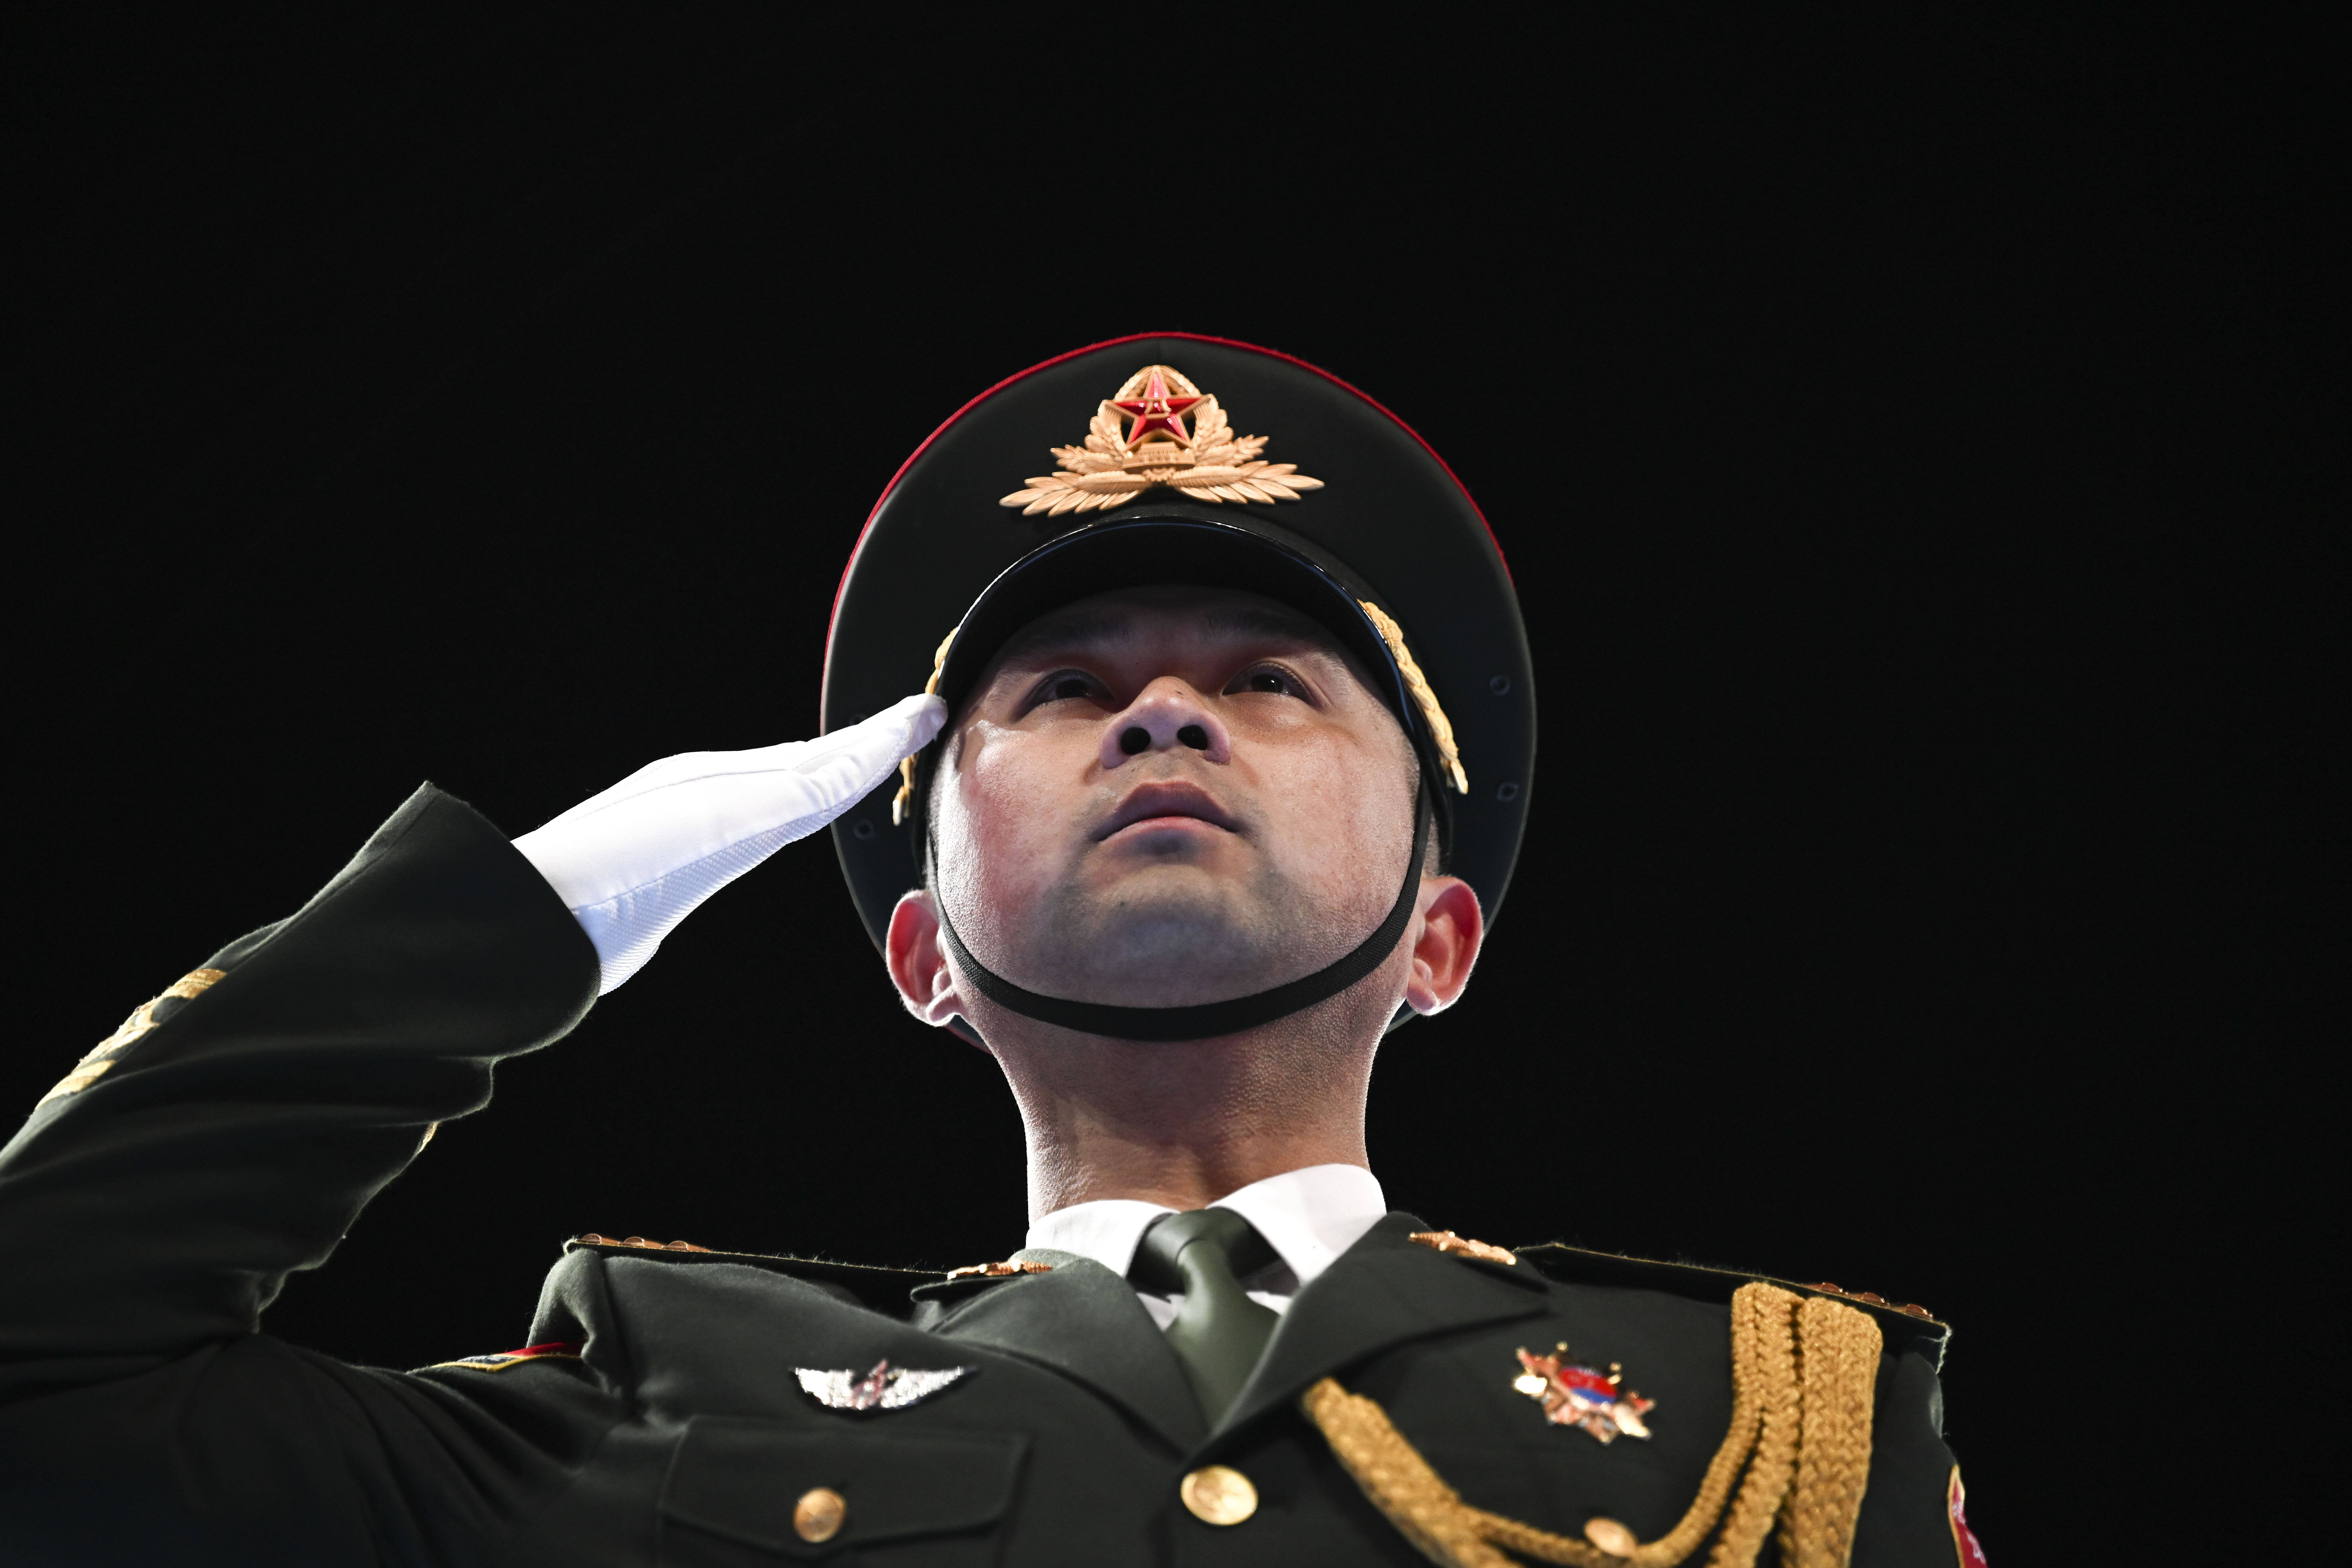 Russen Maschinen landen in China! - Holen die Russen militärische Ausrüstung in China ab? Experten besorgt